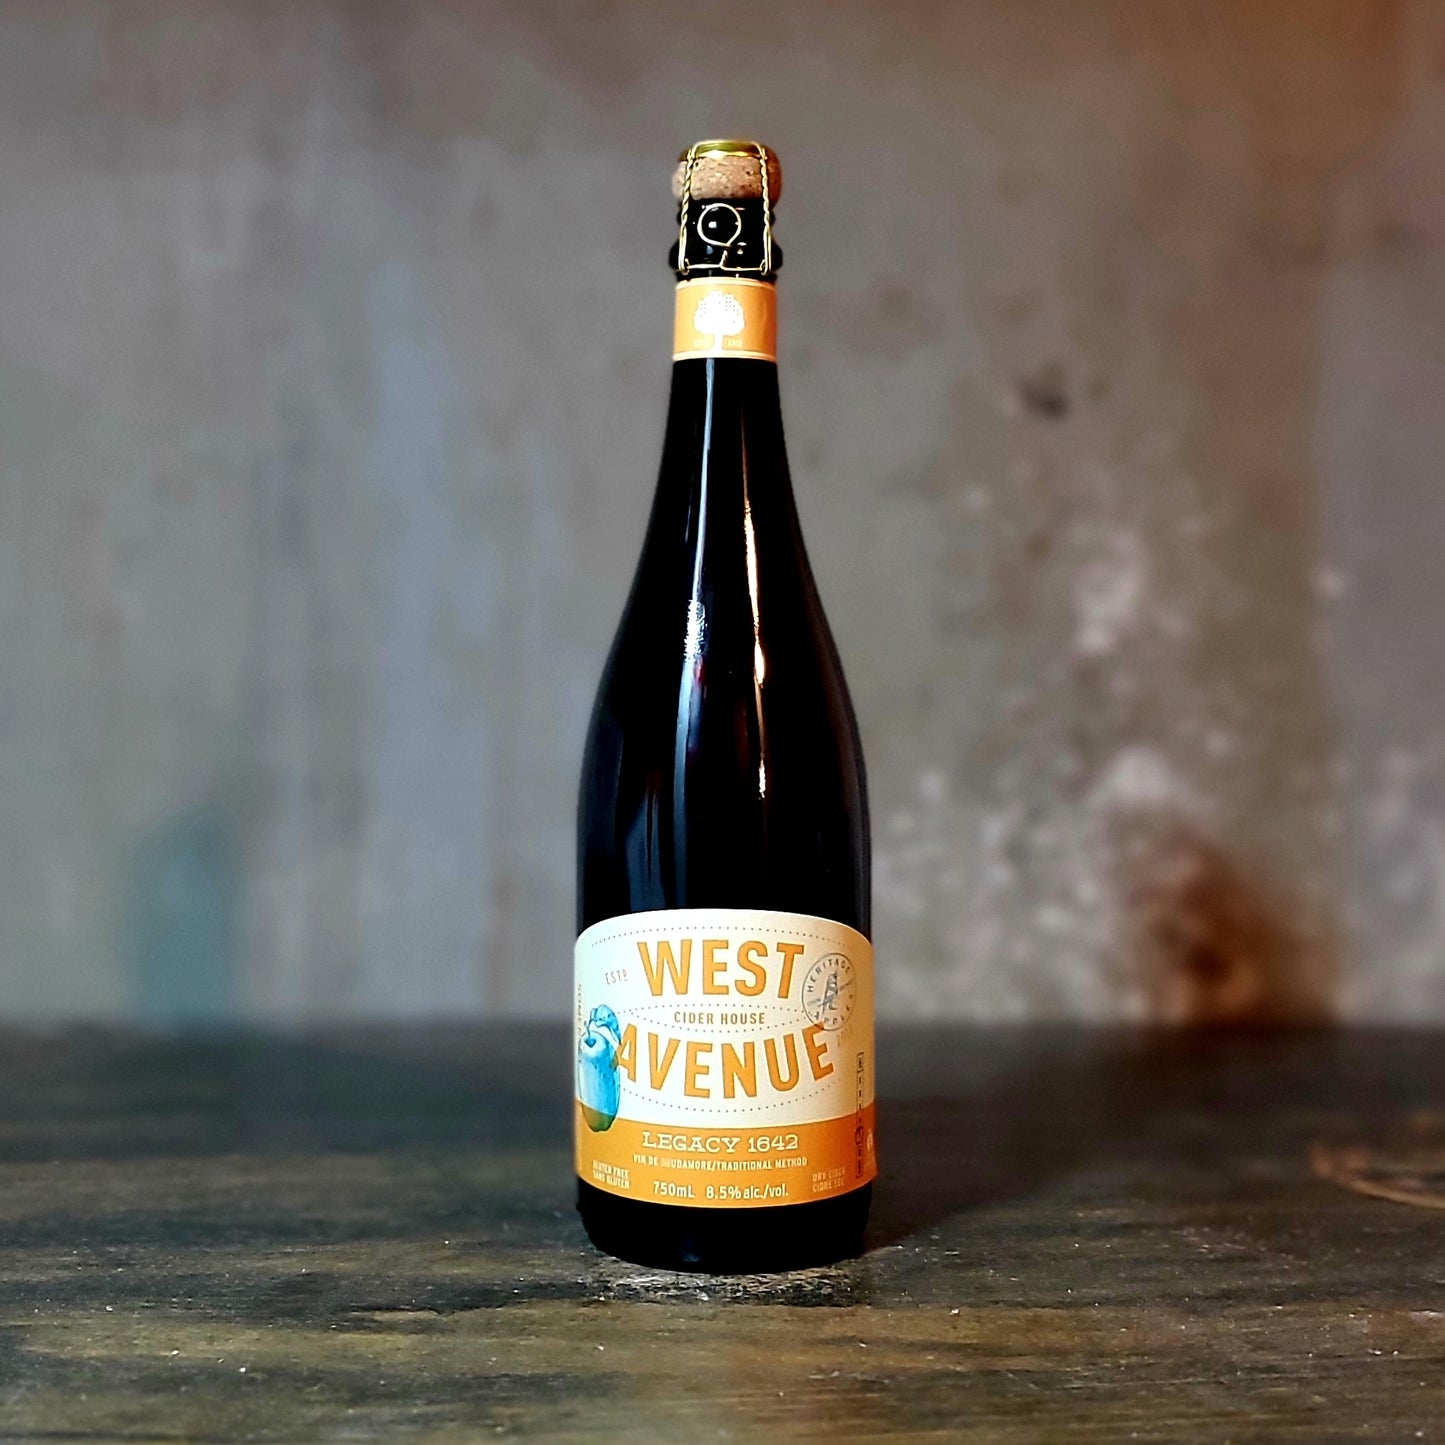 West Avenue "Legacy 1642" Barrel Aged Golden Russet Cider